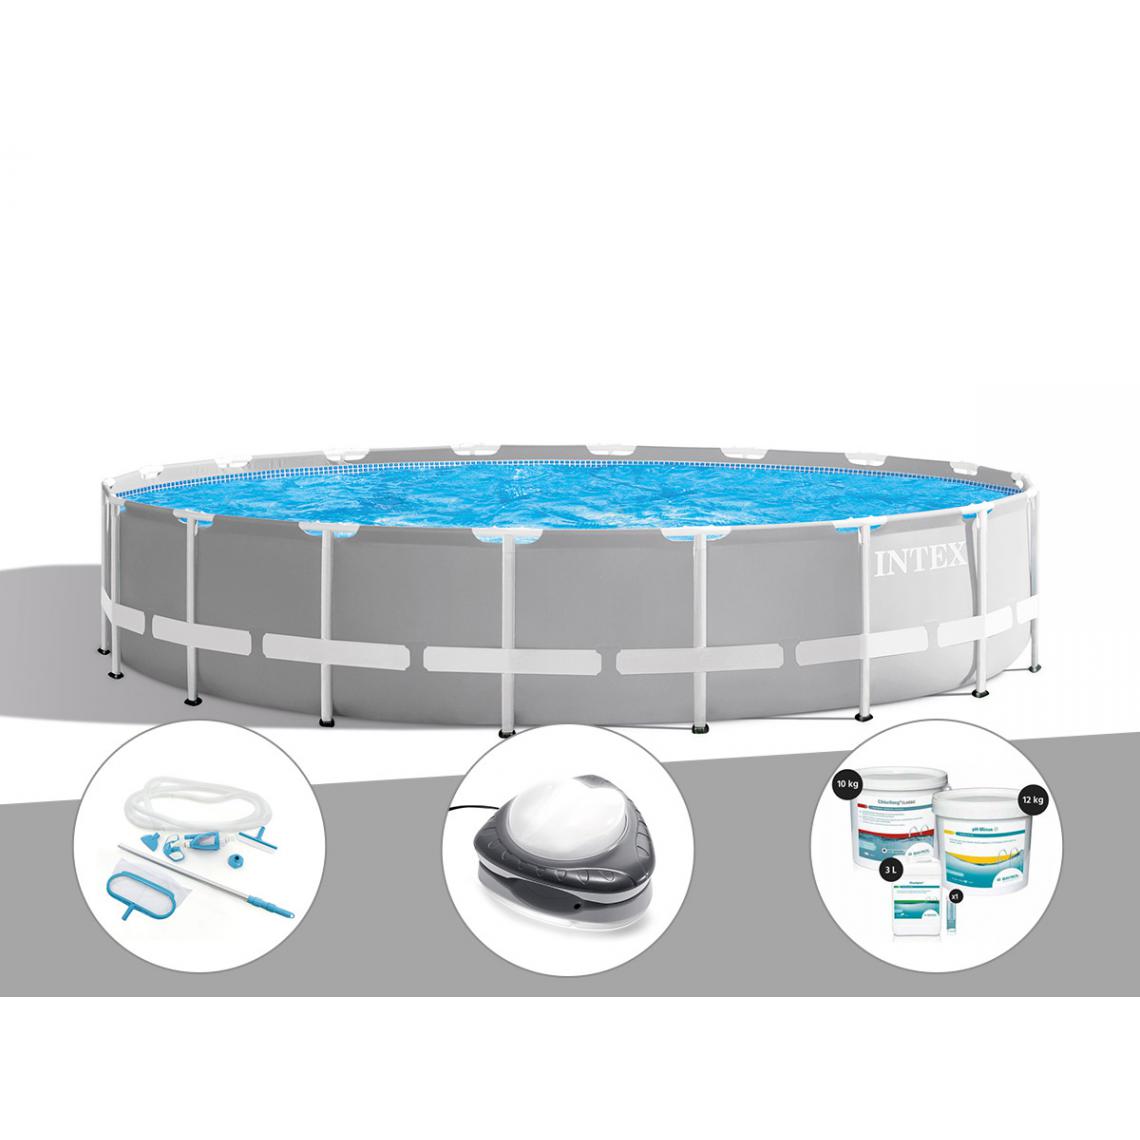 Intex - Kit piscine tubulaire Intex Prism Frame ronde 6,10 x 1,32 m + Kit d'entretien + Spot + Kit de traitement au chlore - Piscine Tubulaire